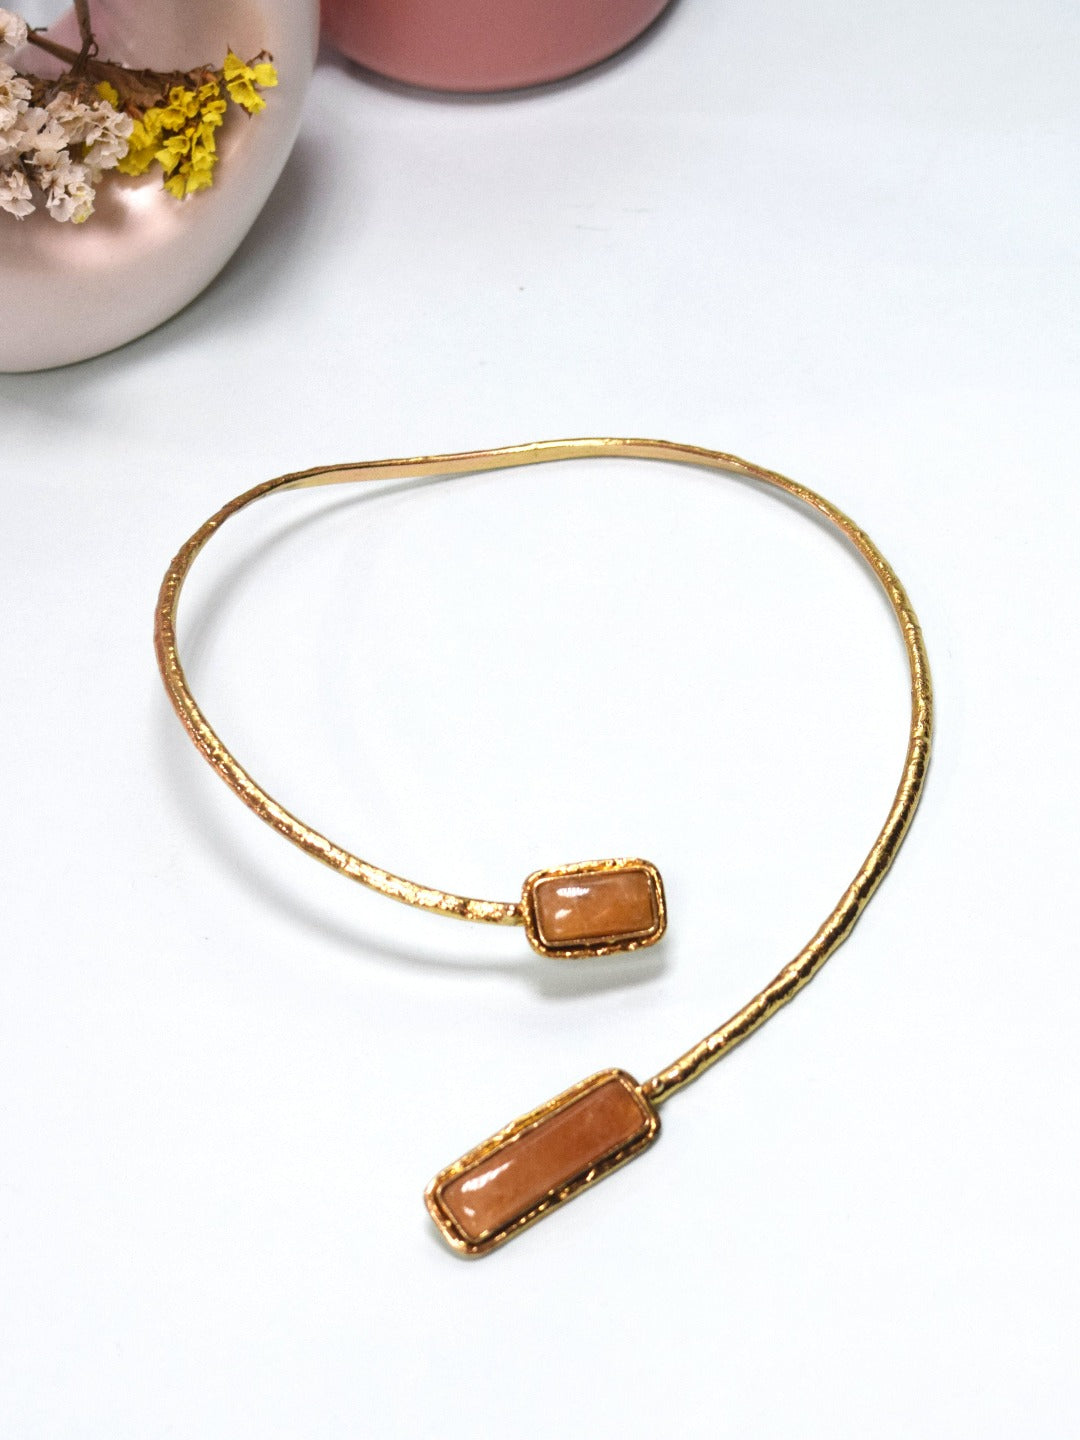 Golden jaspar pendant motif choker necklace